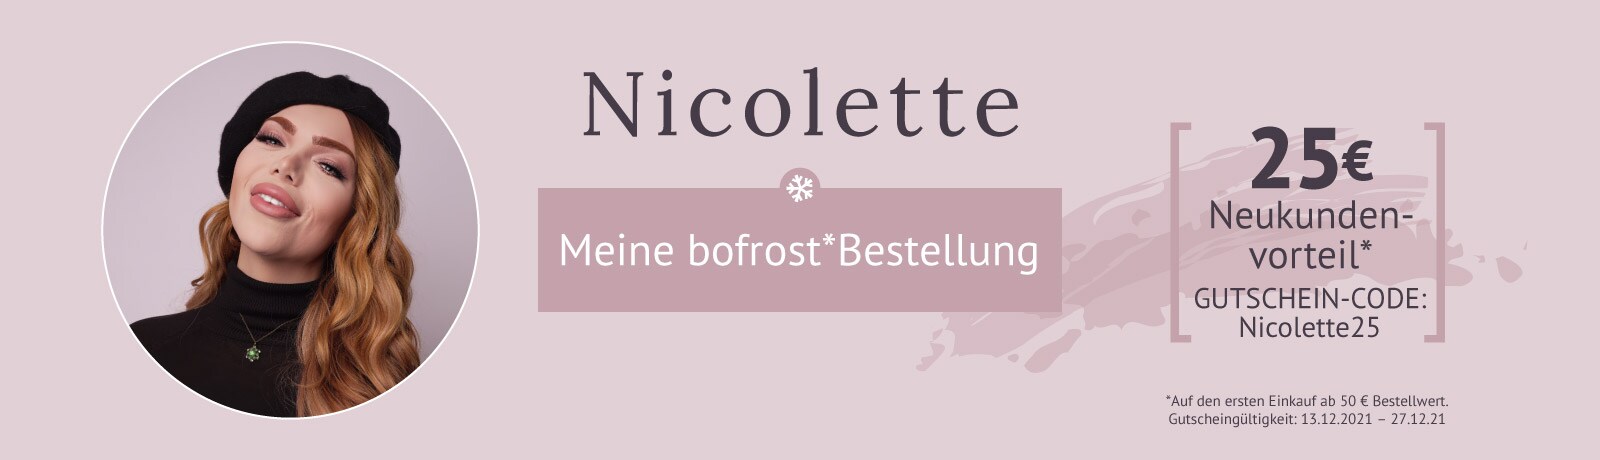 Nicolettes bofrost*Highlights inklusive Vorteil für Neukunden